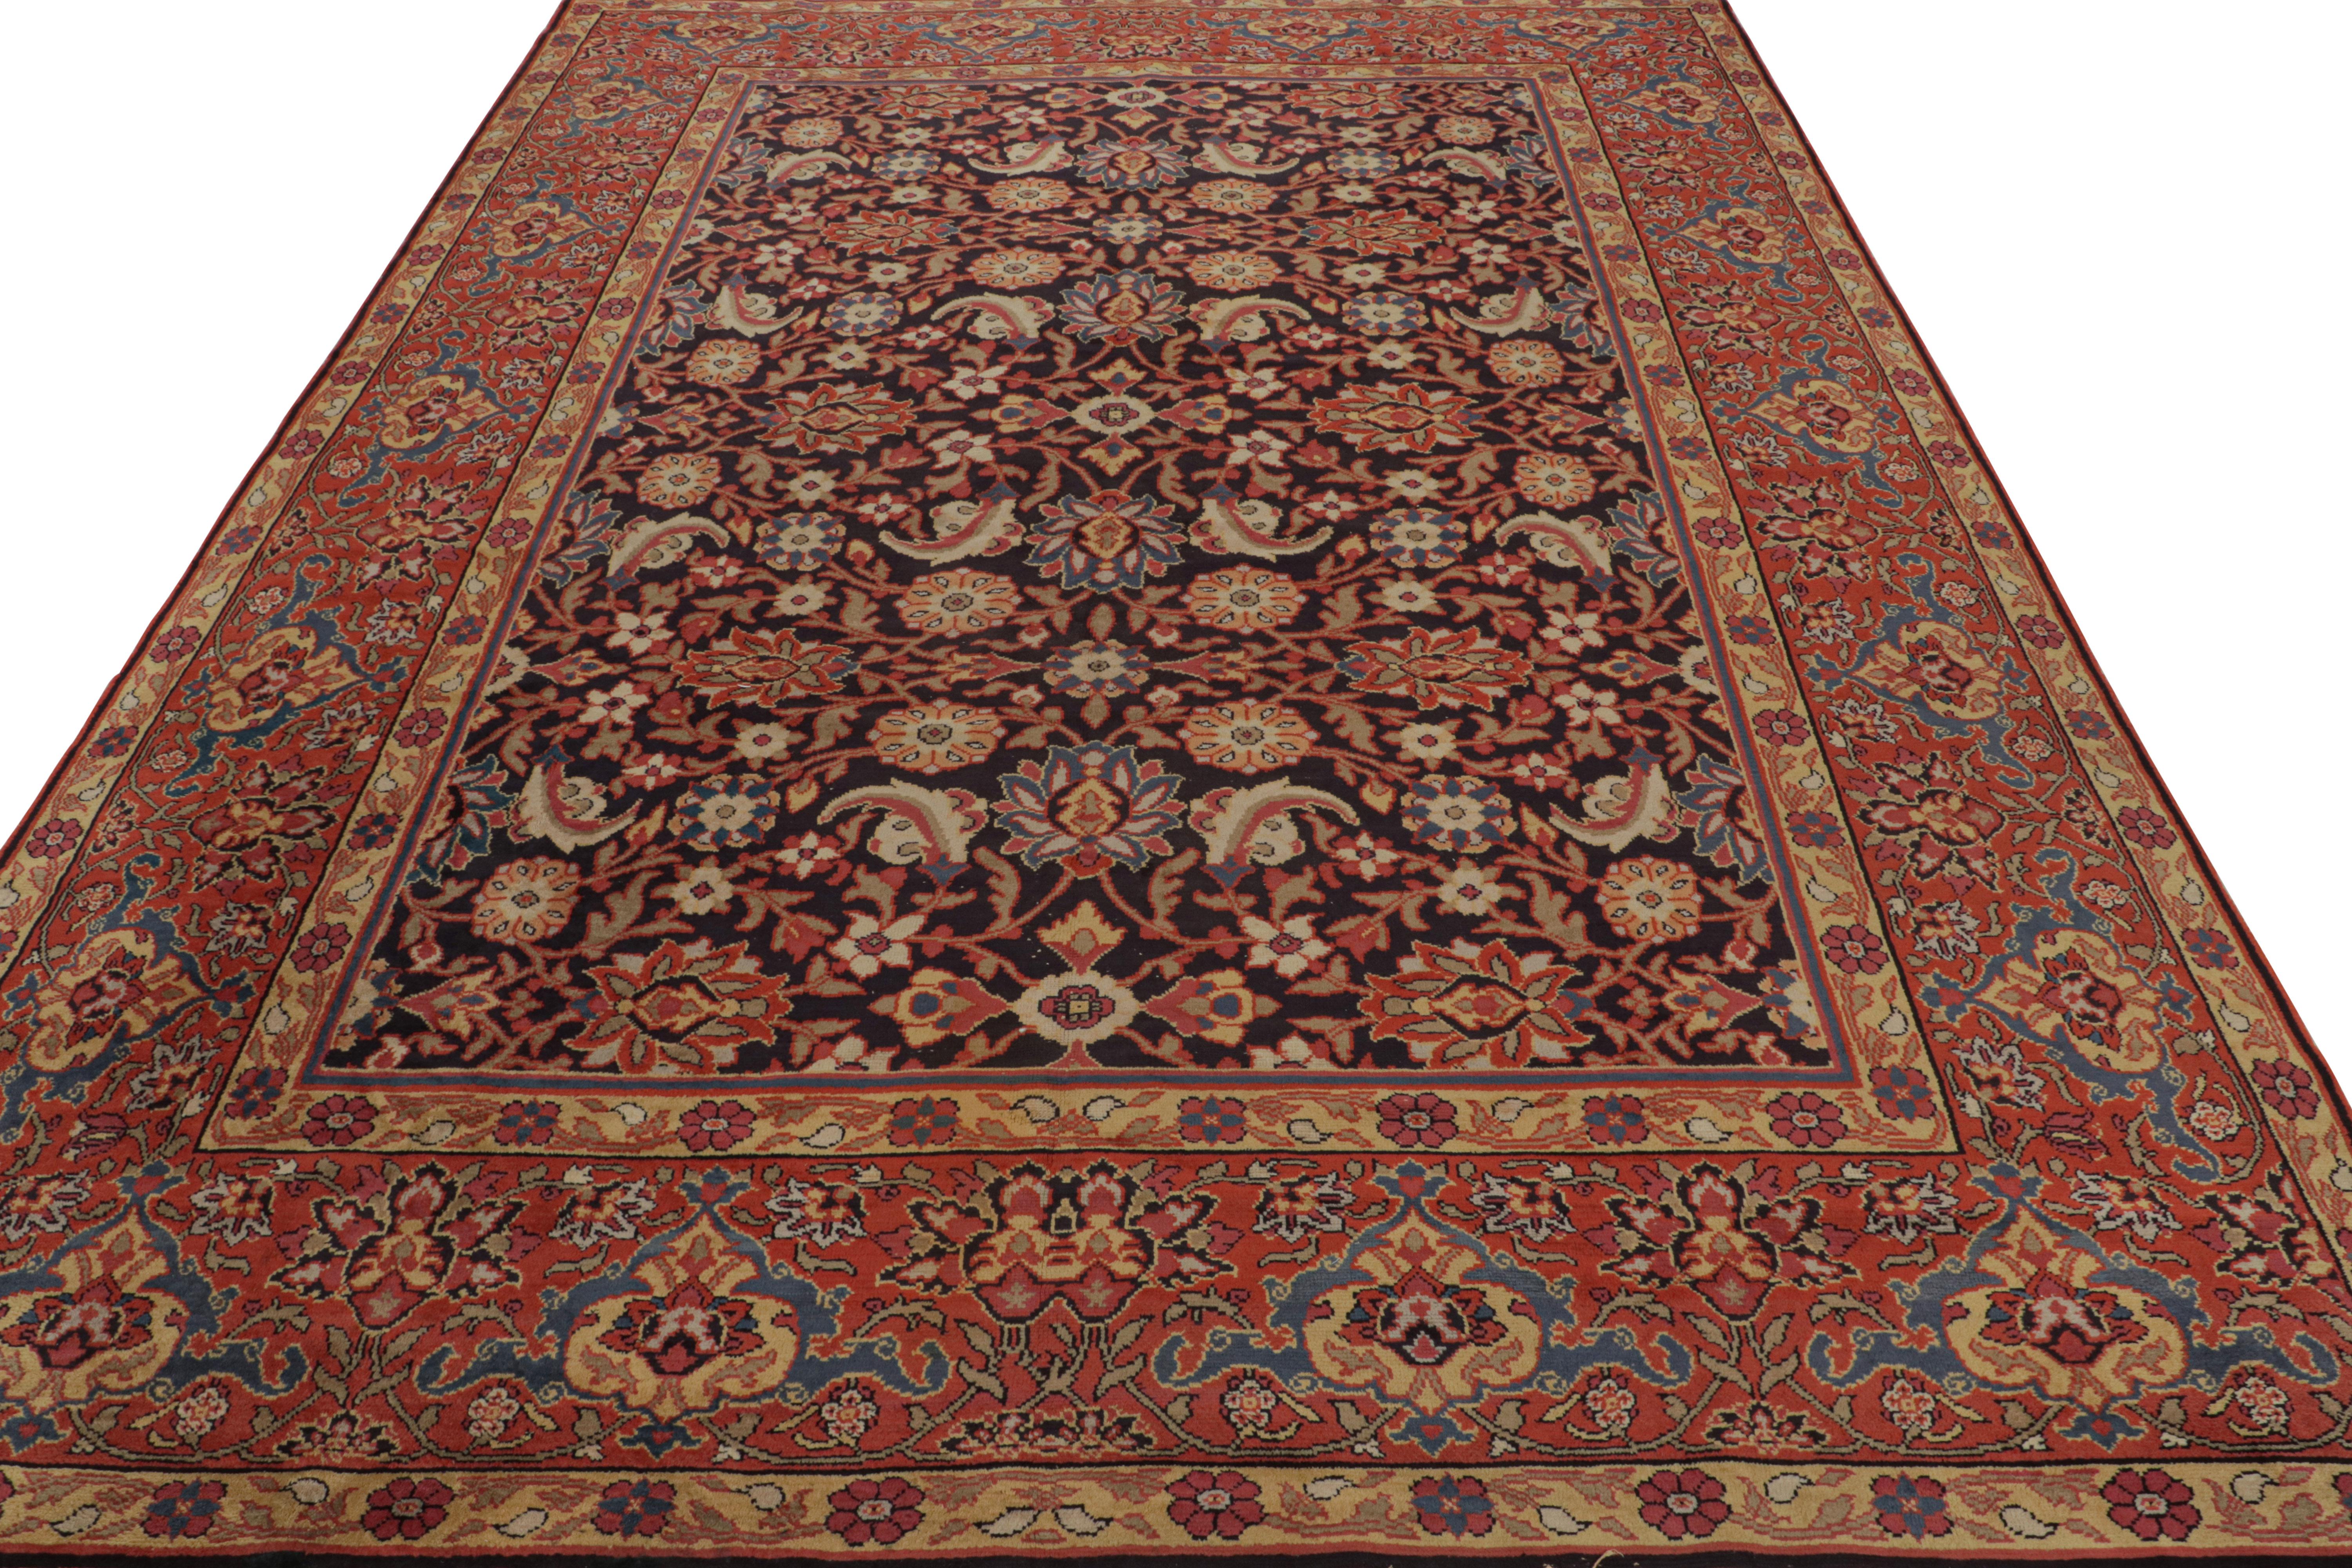 Handgeknüpfter Wollteppich, ein antiker 8x11 großer europäischer Teppich aus Irland, ca. 1920-1930 - inspiriert von persischen Teppichen aus derselben und früheren Epochen

Über das Design:

Das Design besteht aus einem schwarzen Feld und einer